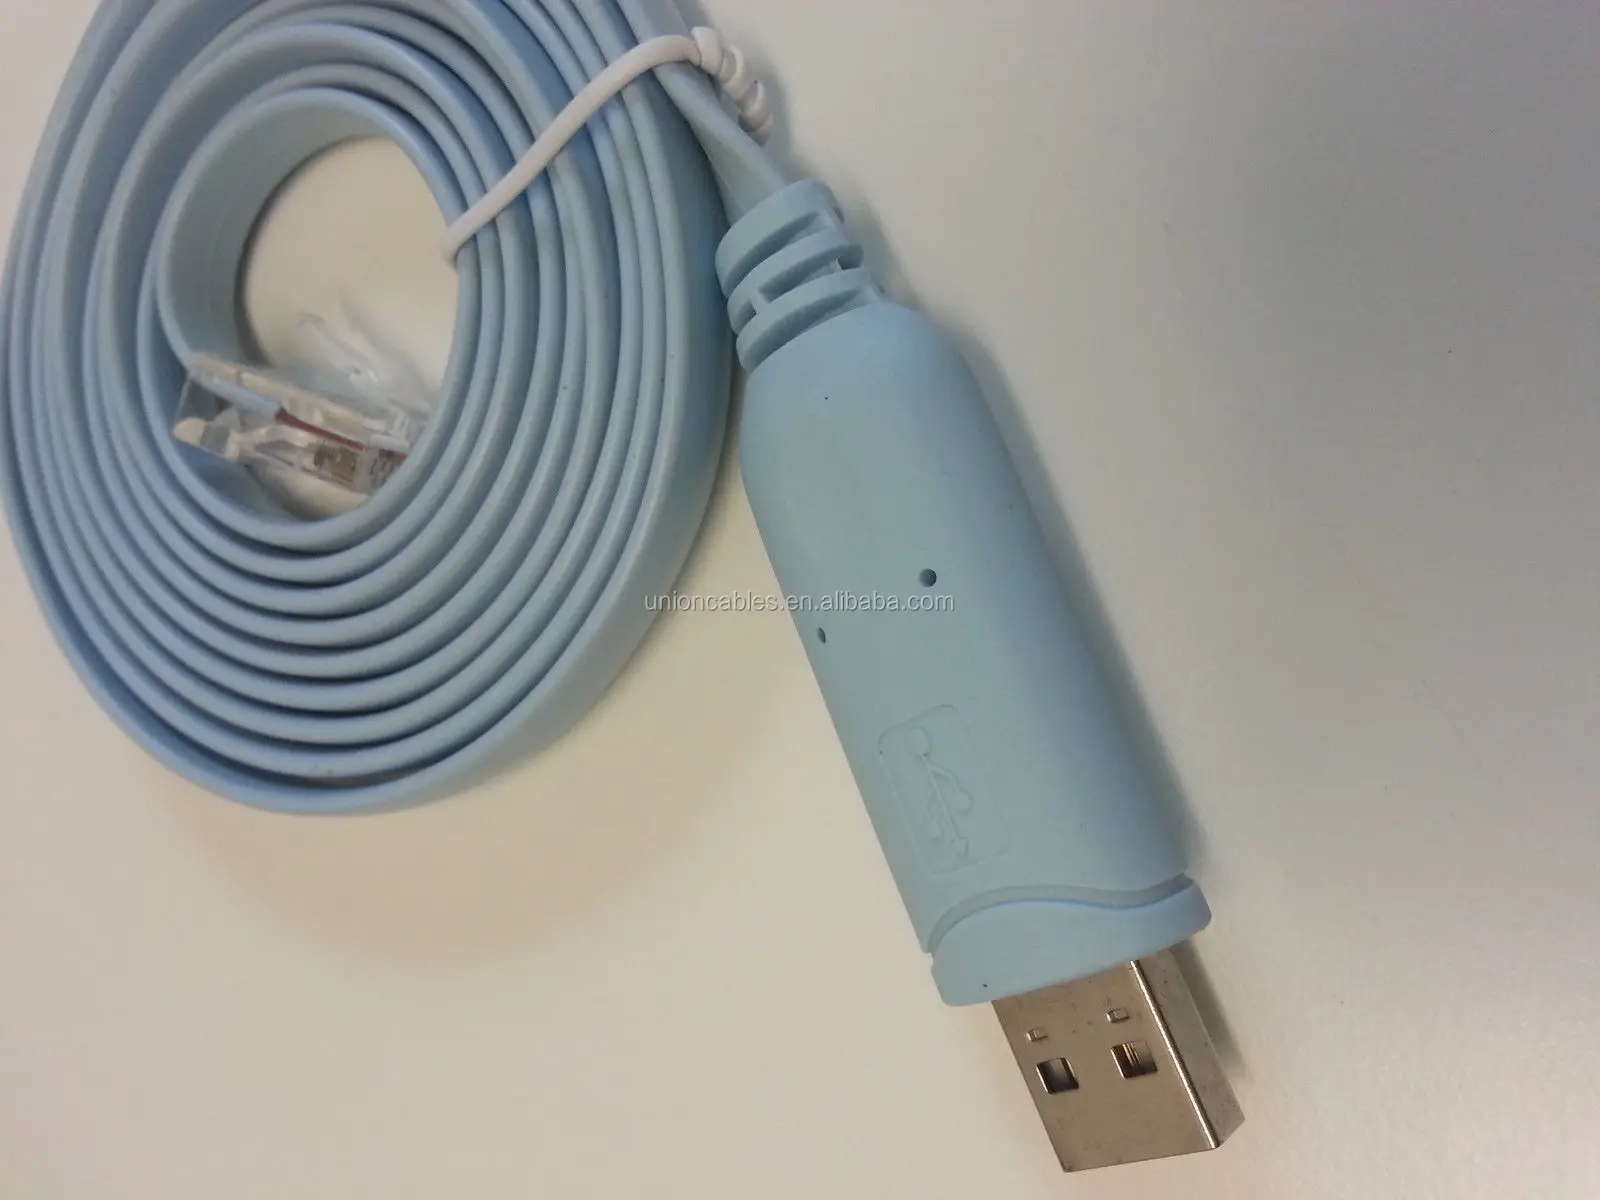 FTDI USB série RS232 com Port Console vers RJ45 mâle câble câble rollover pour routeurs Cisco 